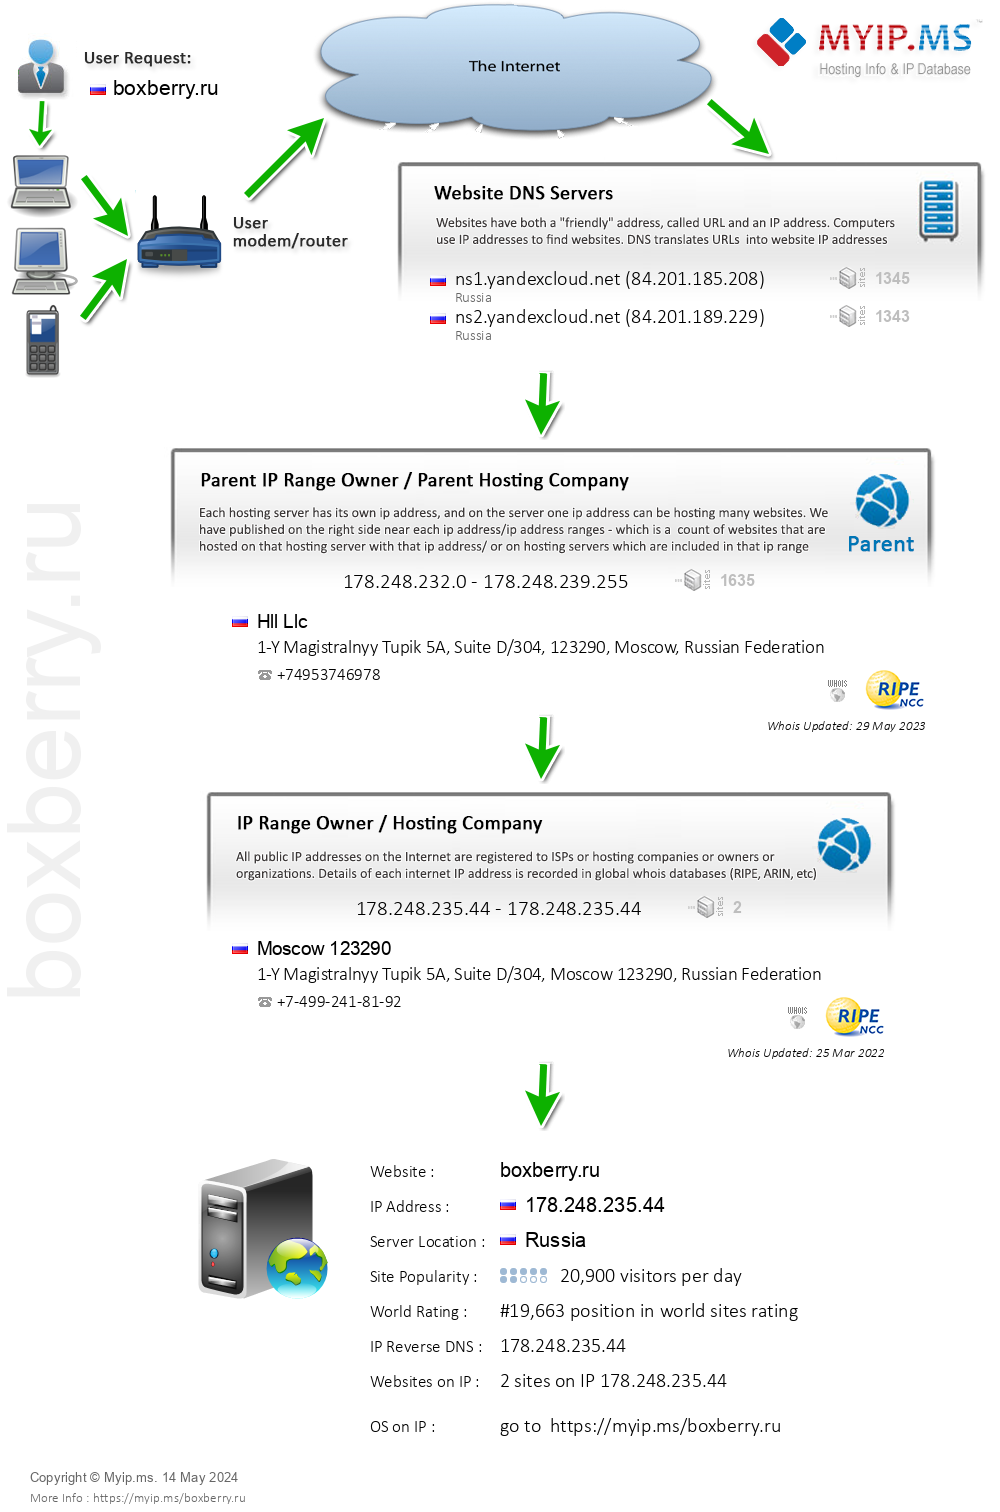 Boxberry.ru - Website Hosting Visual IP Diagram